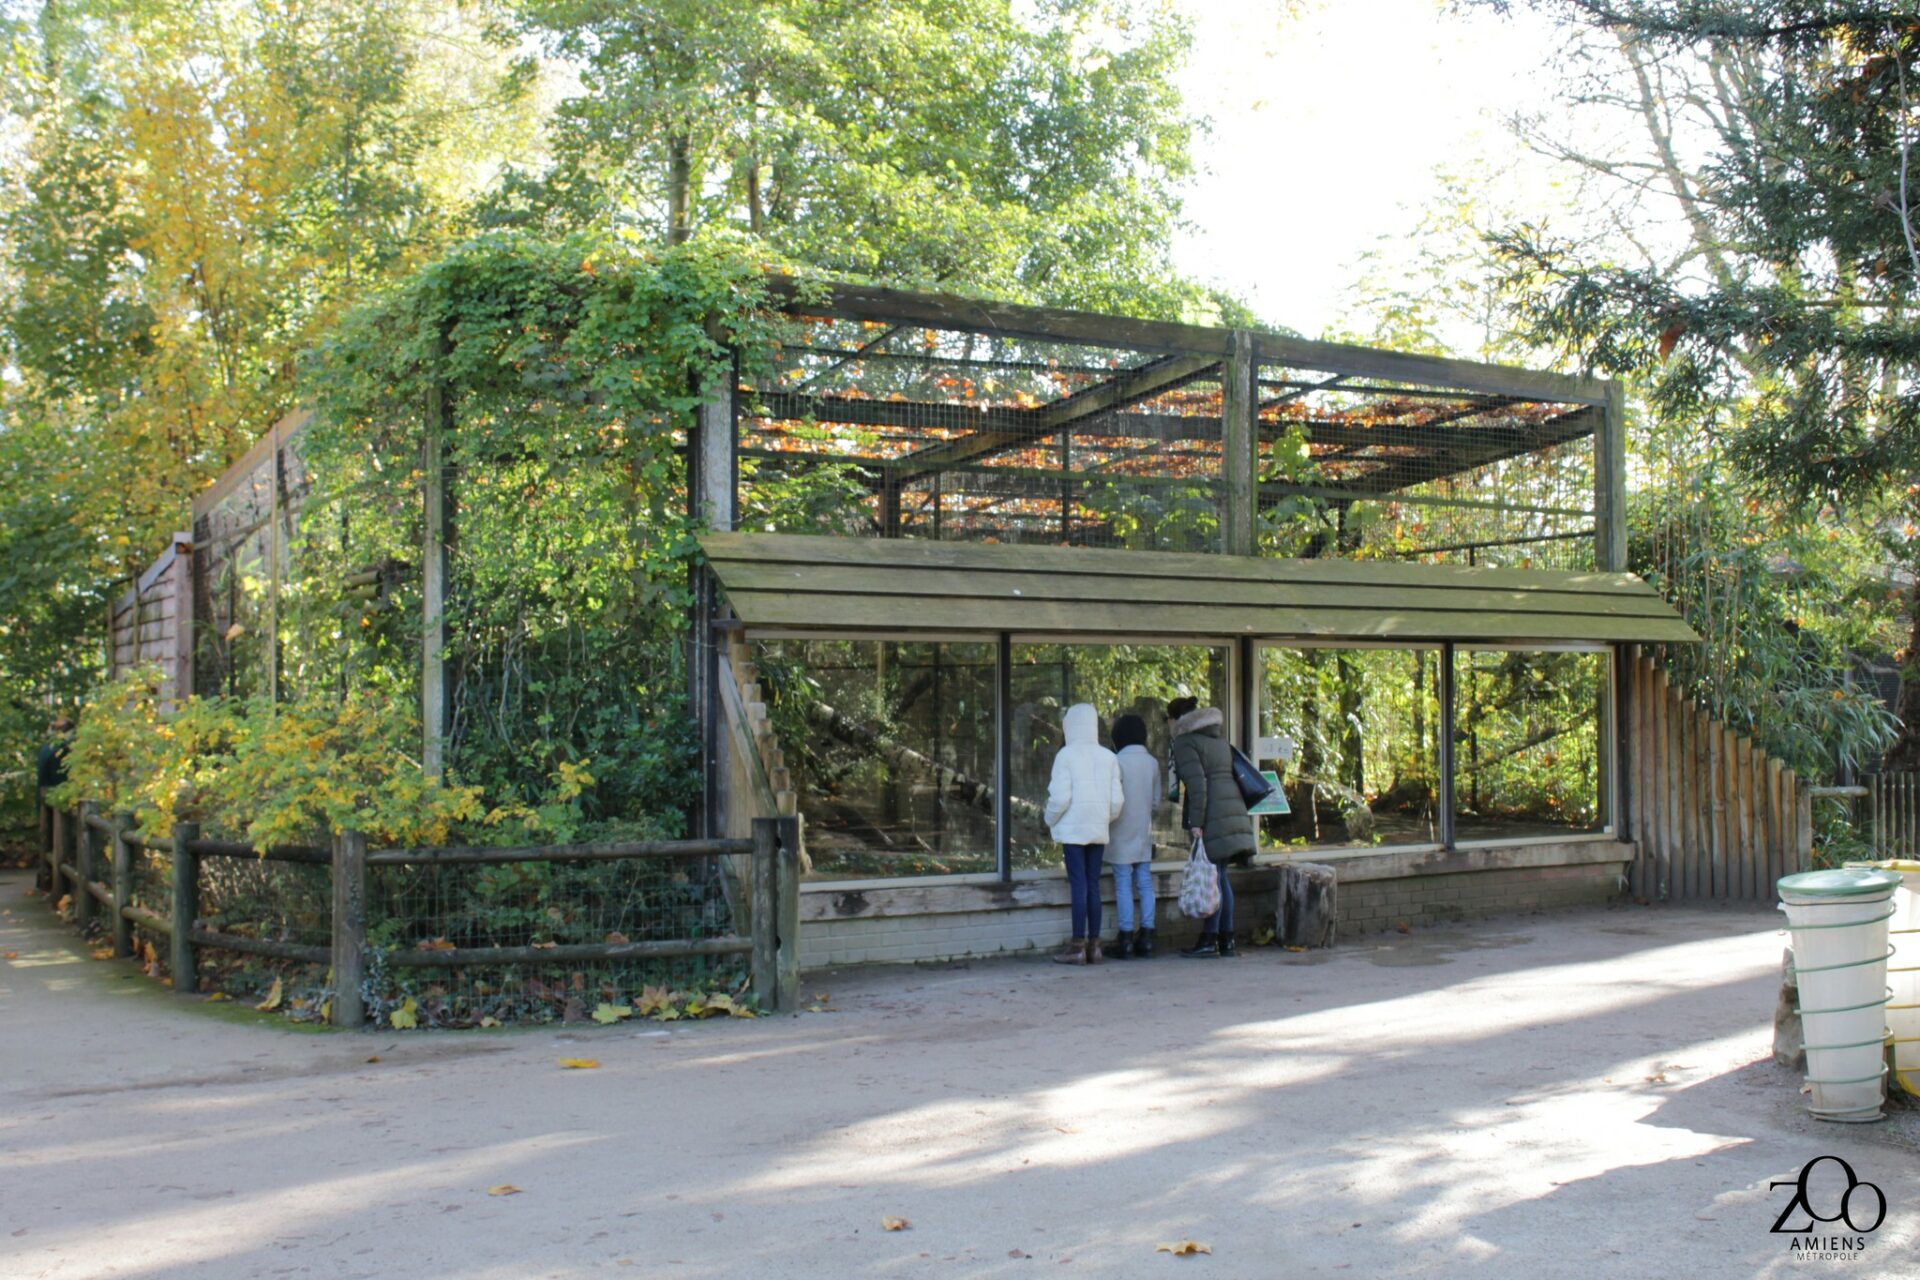 Le vivarium d'Archipels rencontre - Zoo d'Amiens Métropole